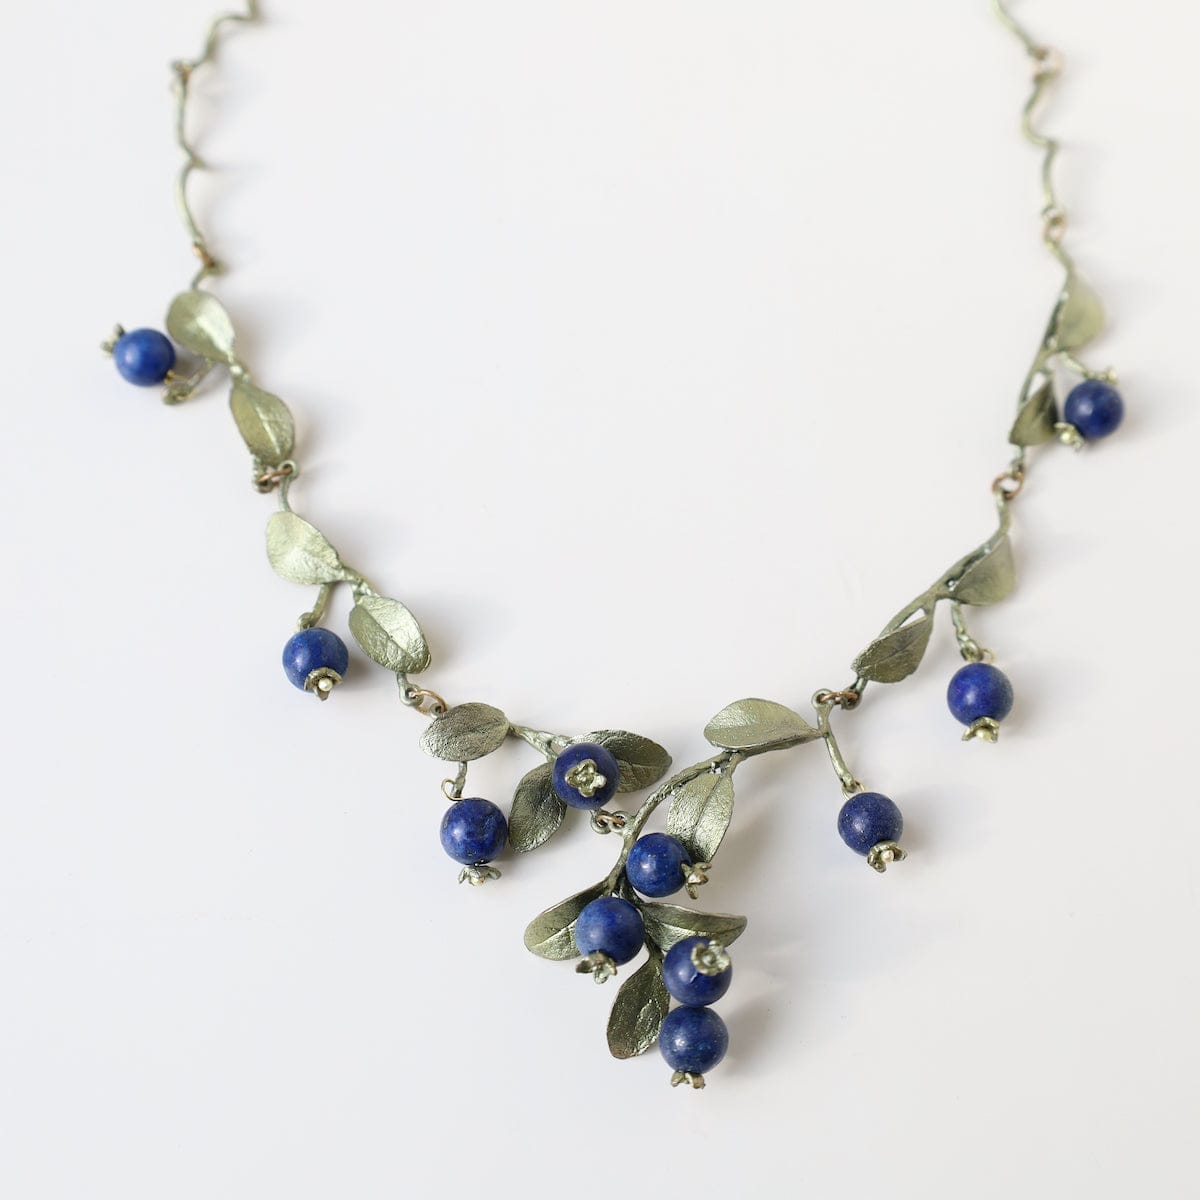 NKL Blueberry Necklace